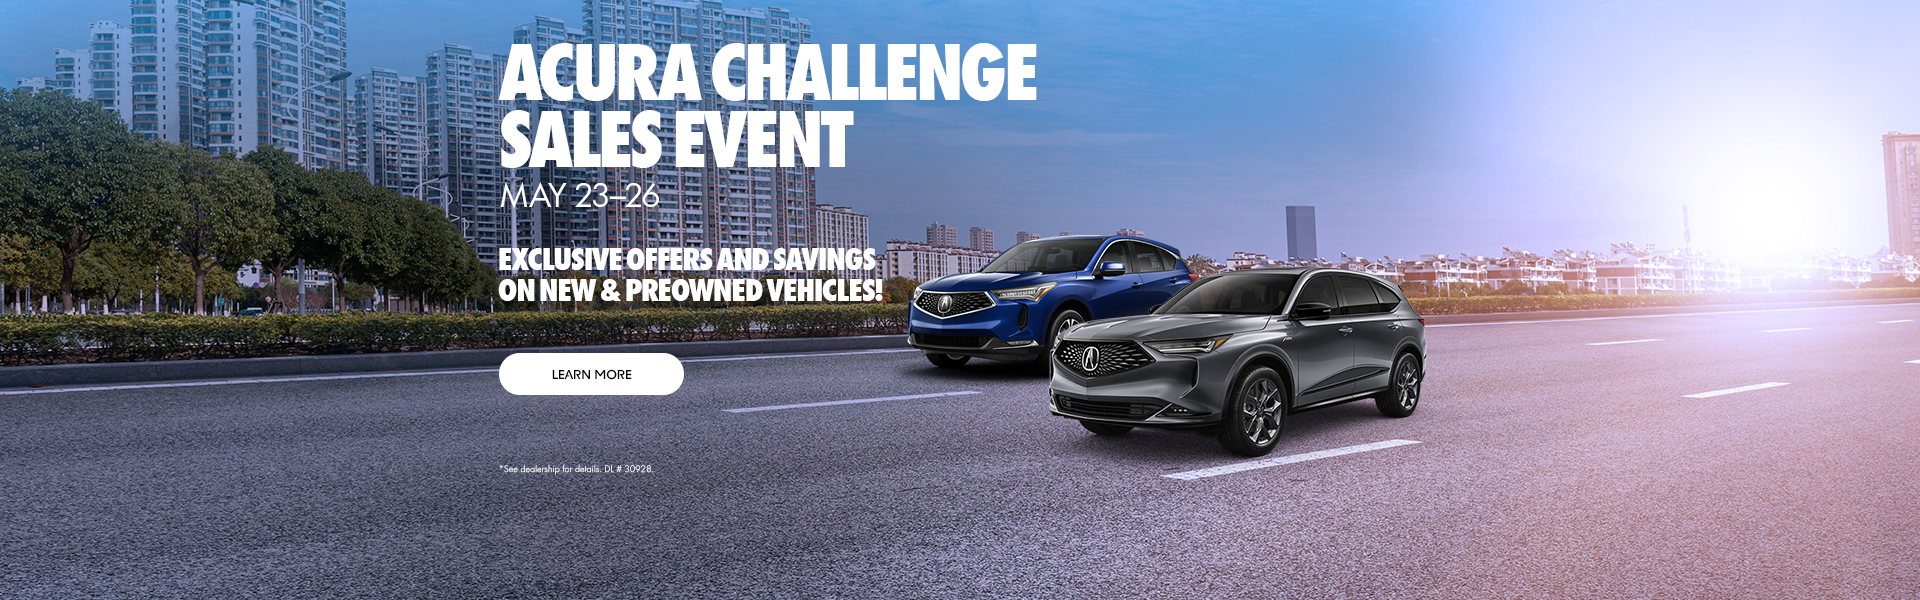 Acura Challenge Sales Event